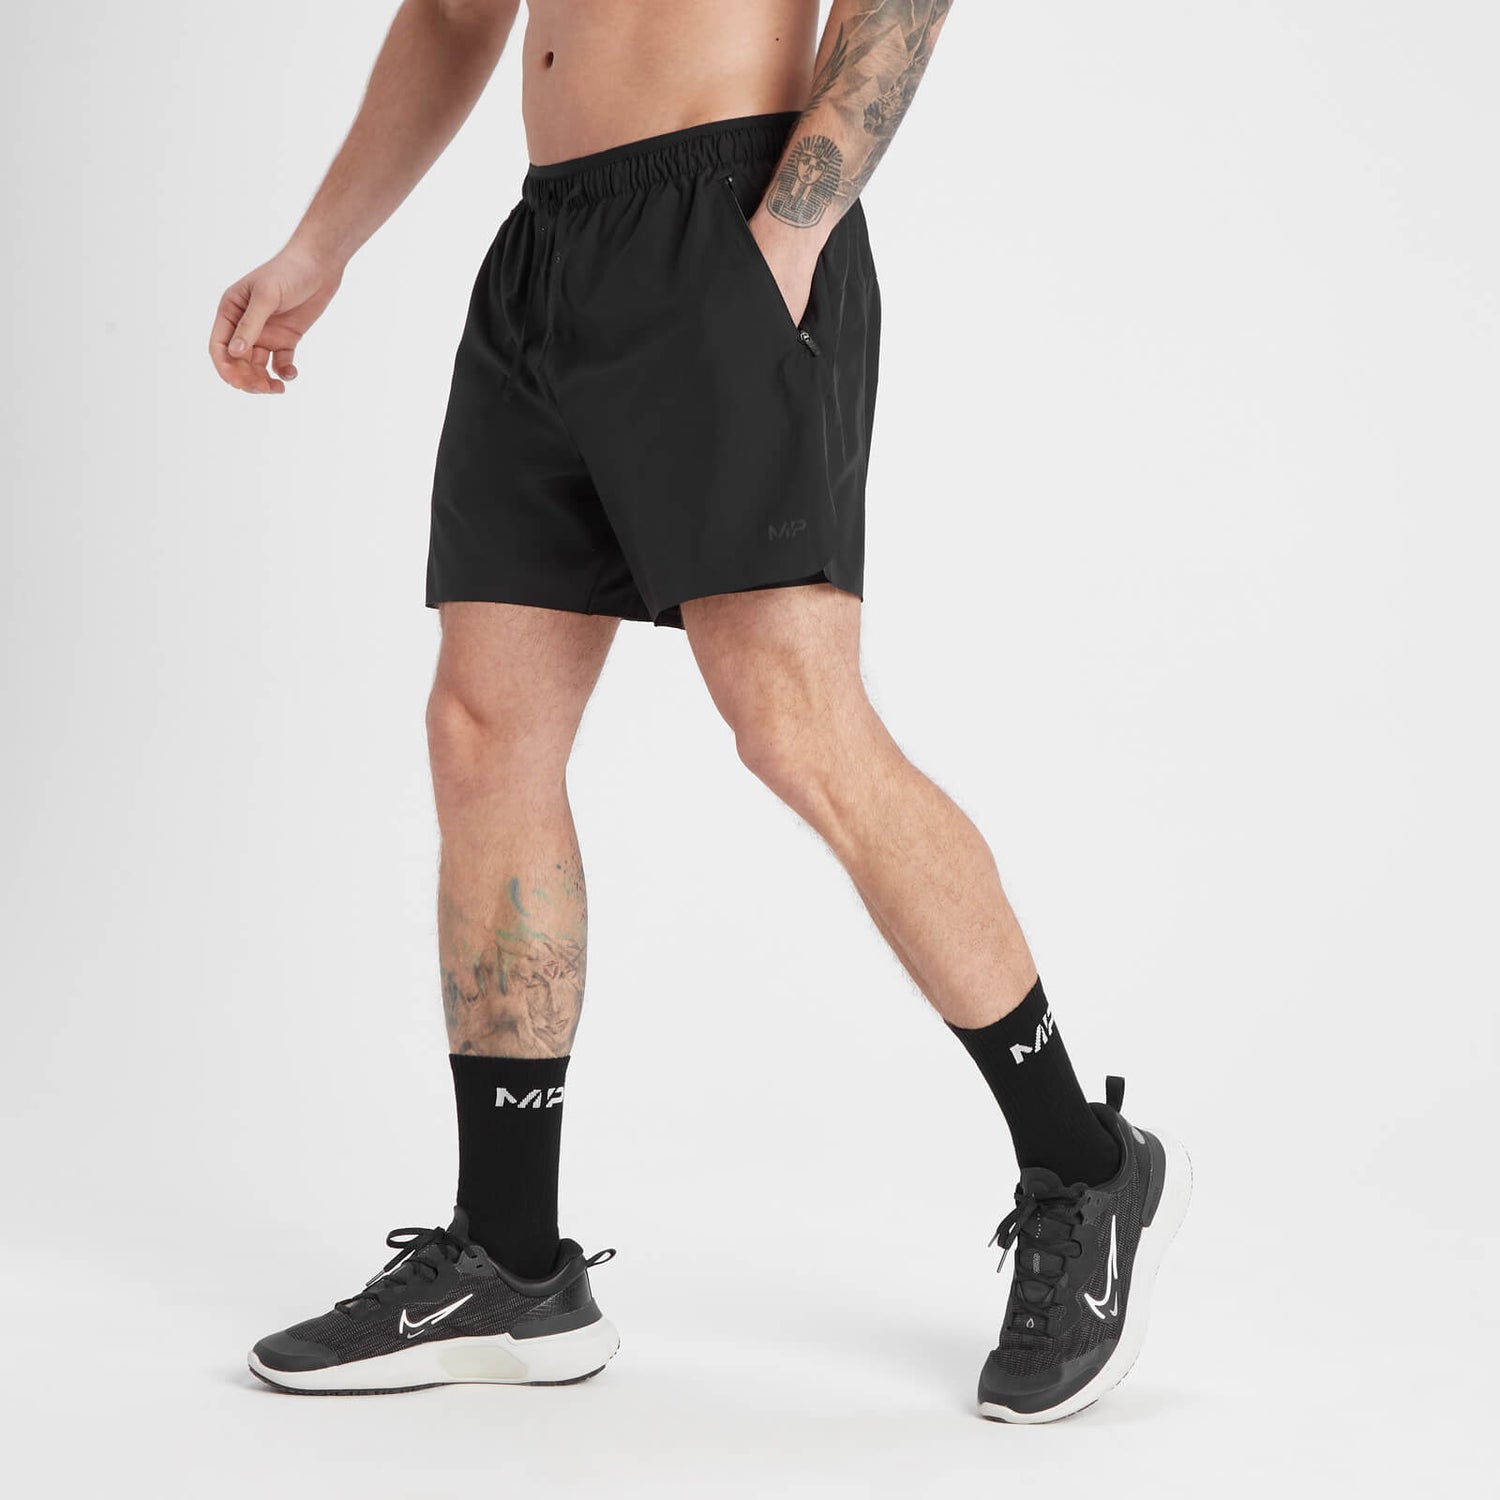 MP Men's Velocity Ultra 2 In 1 Shorts - muški šorts 2 u 1 - crni - XS